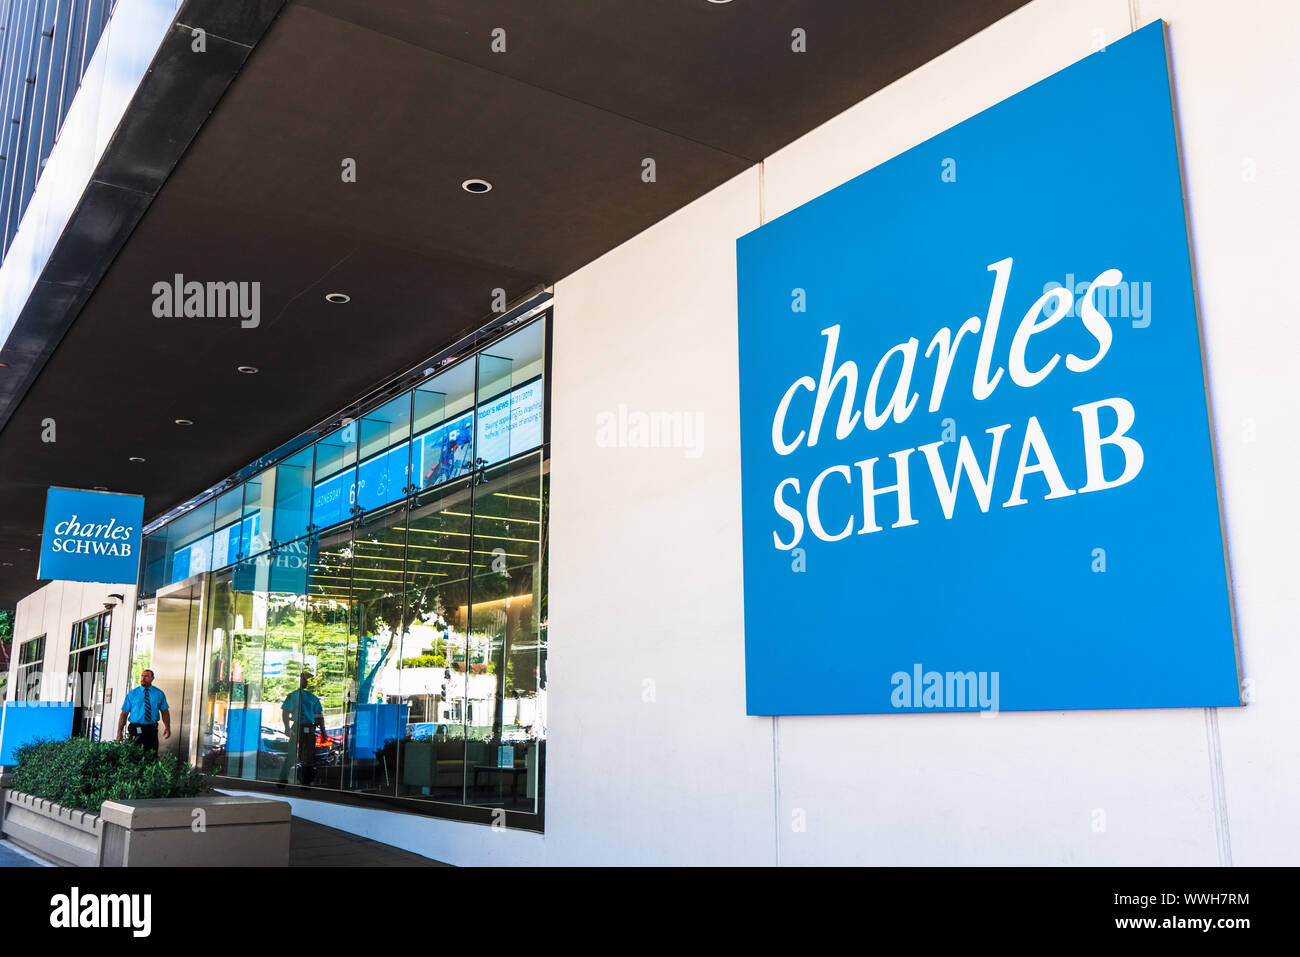 21 août 2019 San Francisco / CA / USA - Charles Schwab immeuble de bureaux dans le quartier de SOMA, Charles Schwab Corporation est une banque et stock brokera Banque D'Images